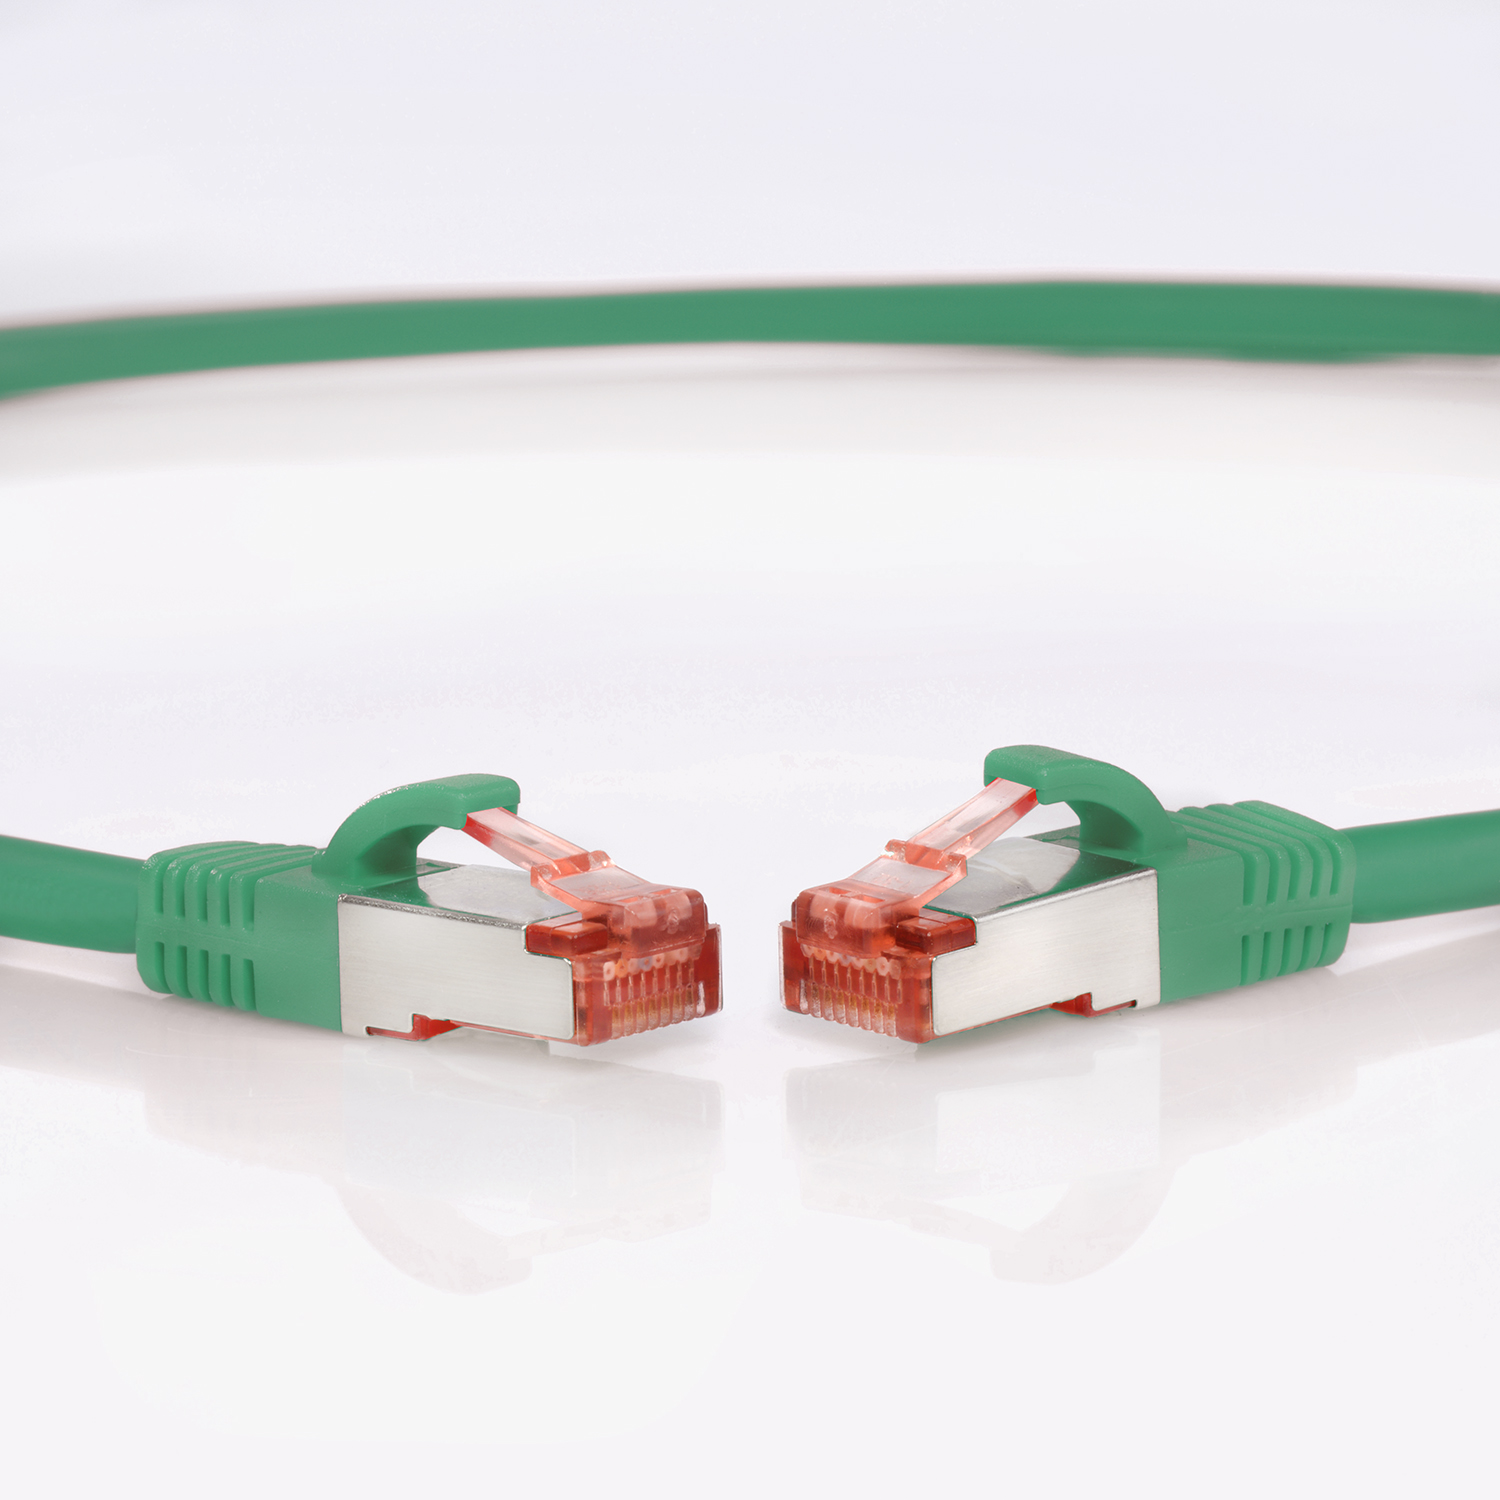 TPFNET 10er grün, m 1000Mbit, / Patchkabel 0,5 Pack Netzwerkkabel Netzwerkkabel, 0,50m S/FTP